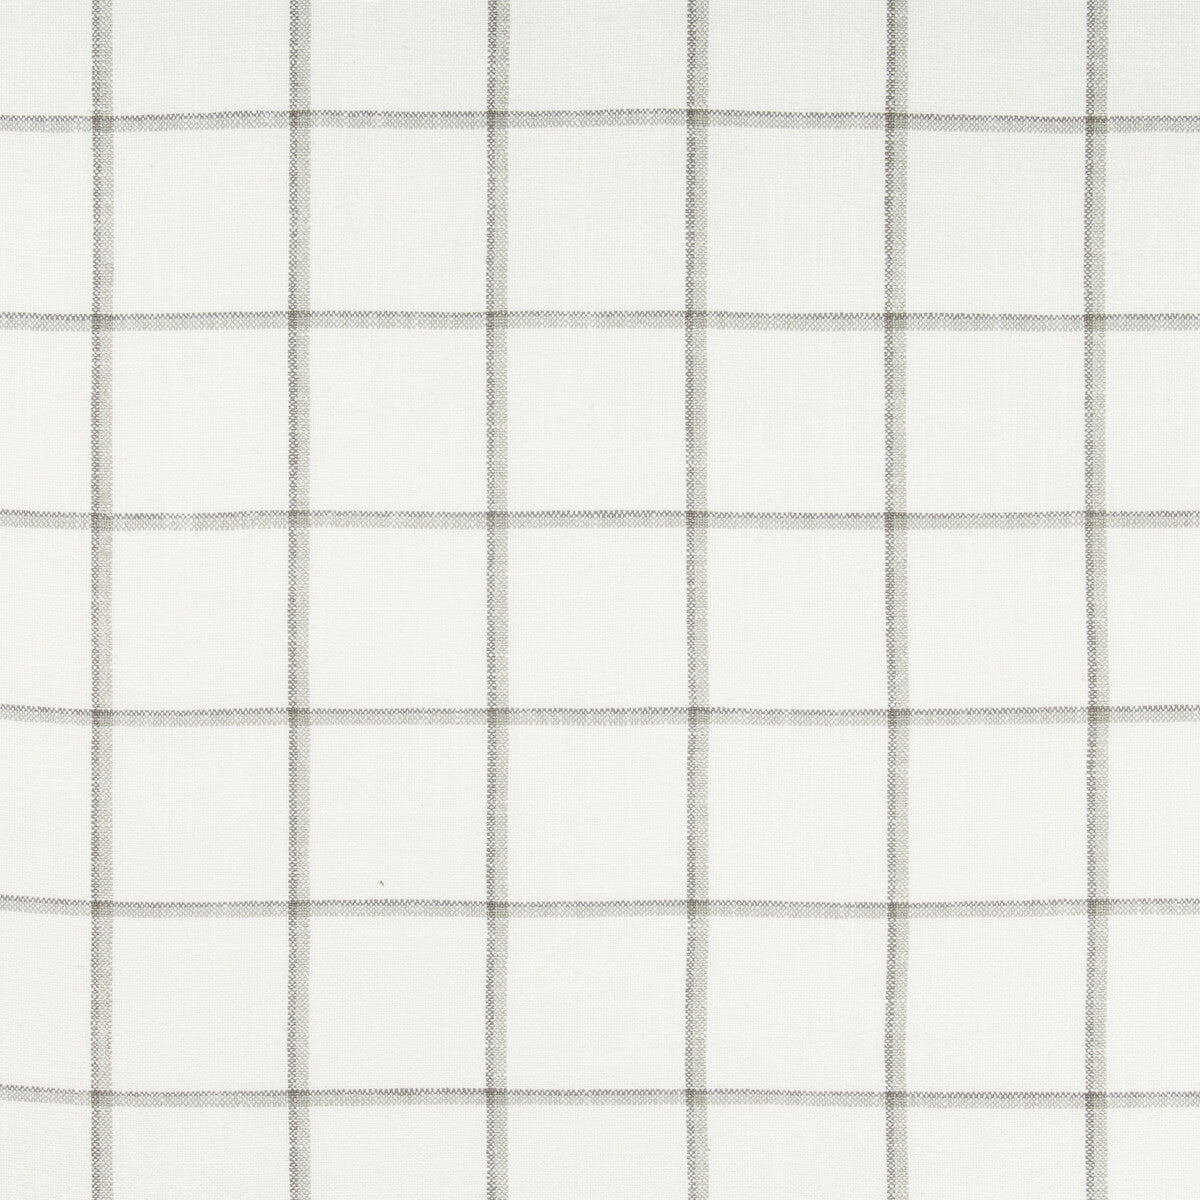 Kravet Basics fabric in 35532-1 color - pattern 35532.1.0 - by Kravet Basics